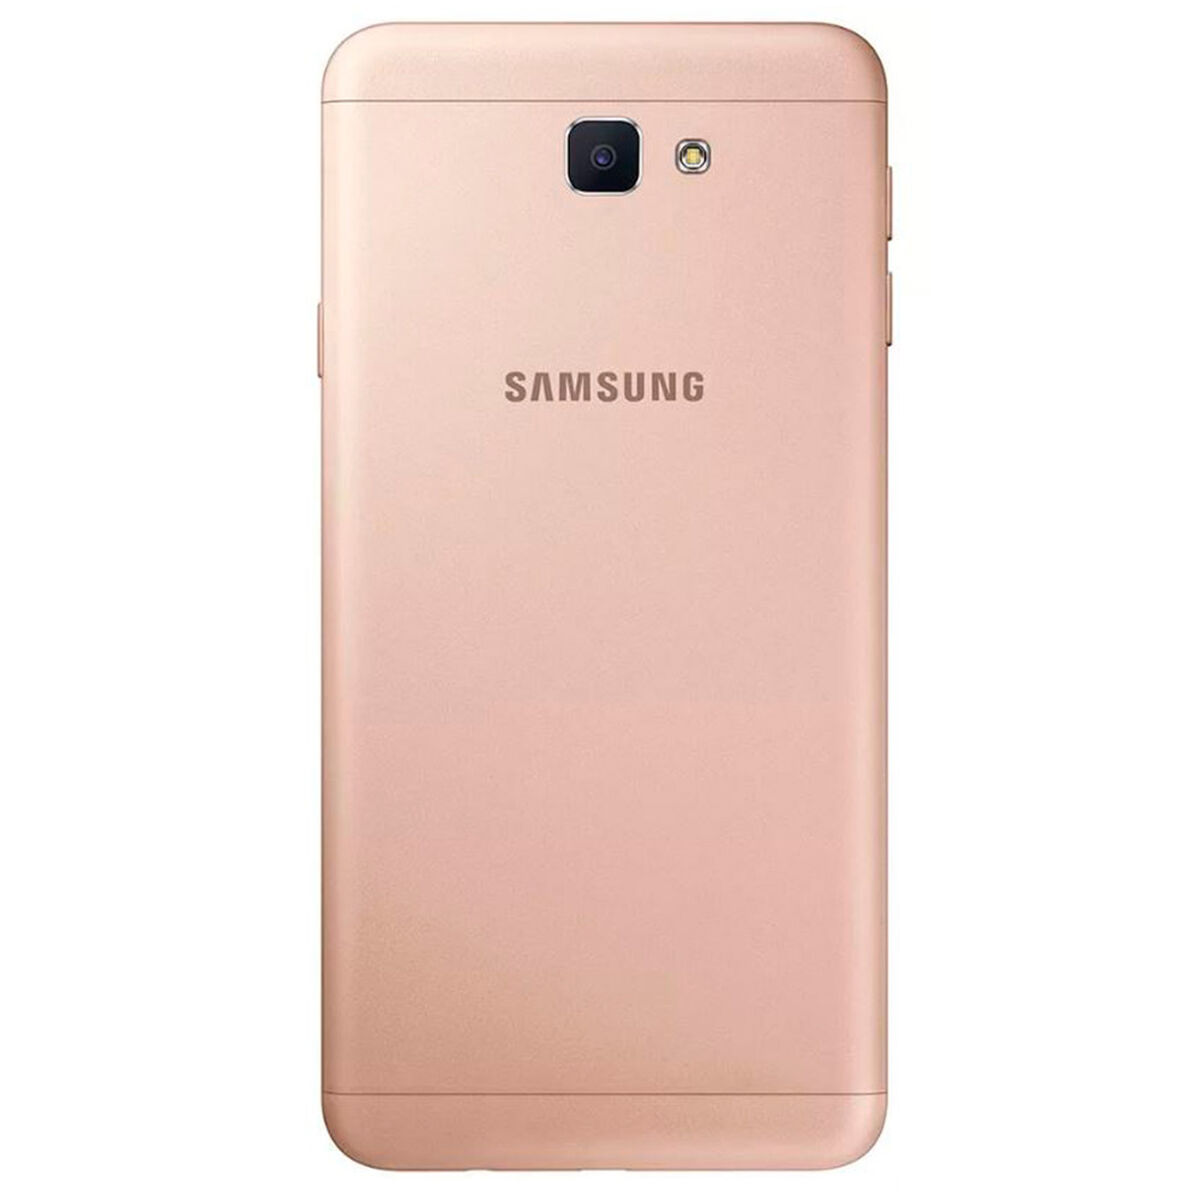 Celular Samsung Galaxy J7 Prime 5.5" Dorado Entel